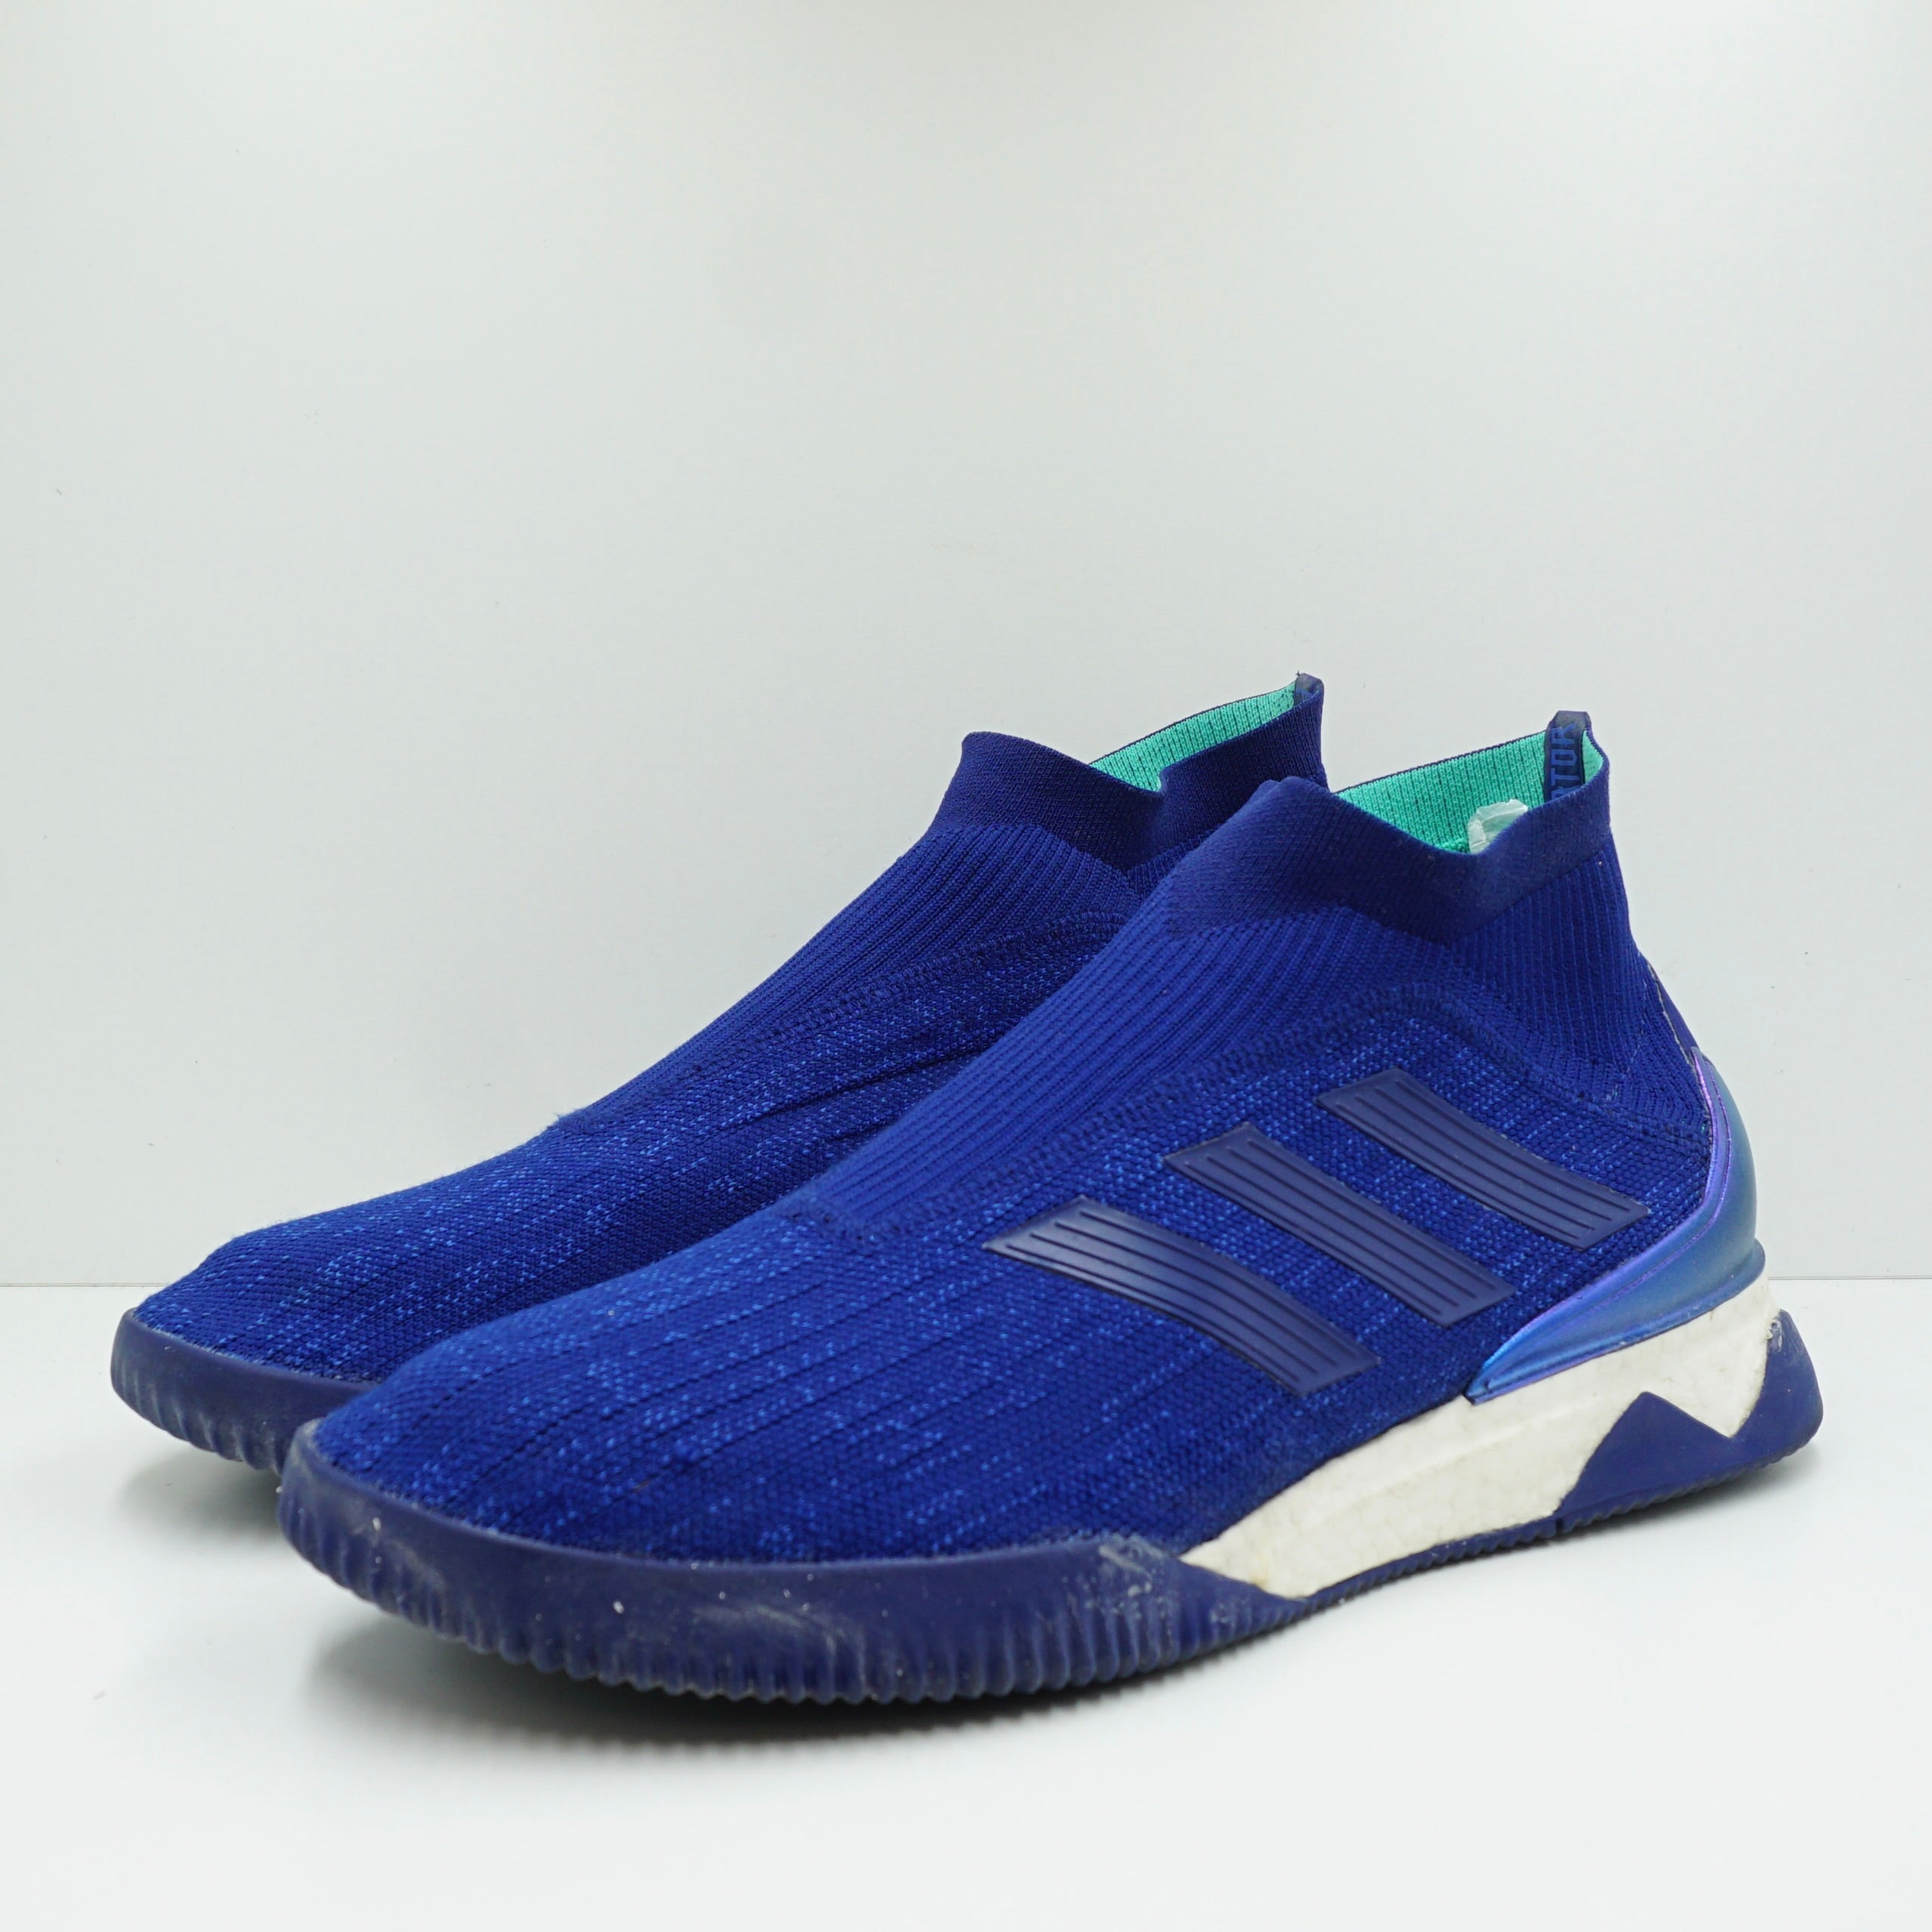 Adidas Predator Tango 18+Hi Res Blue